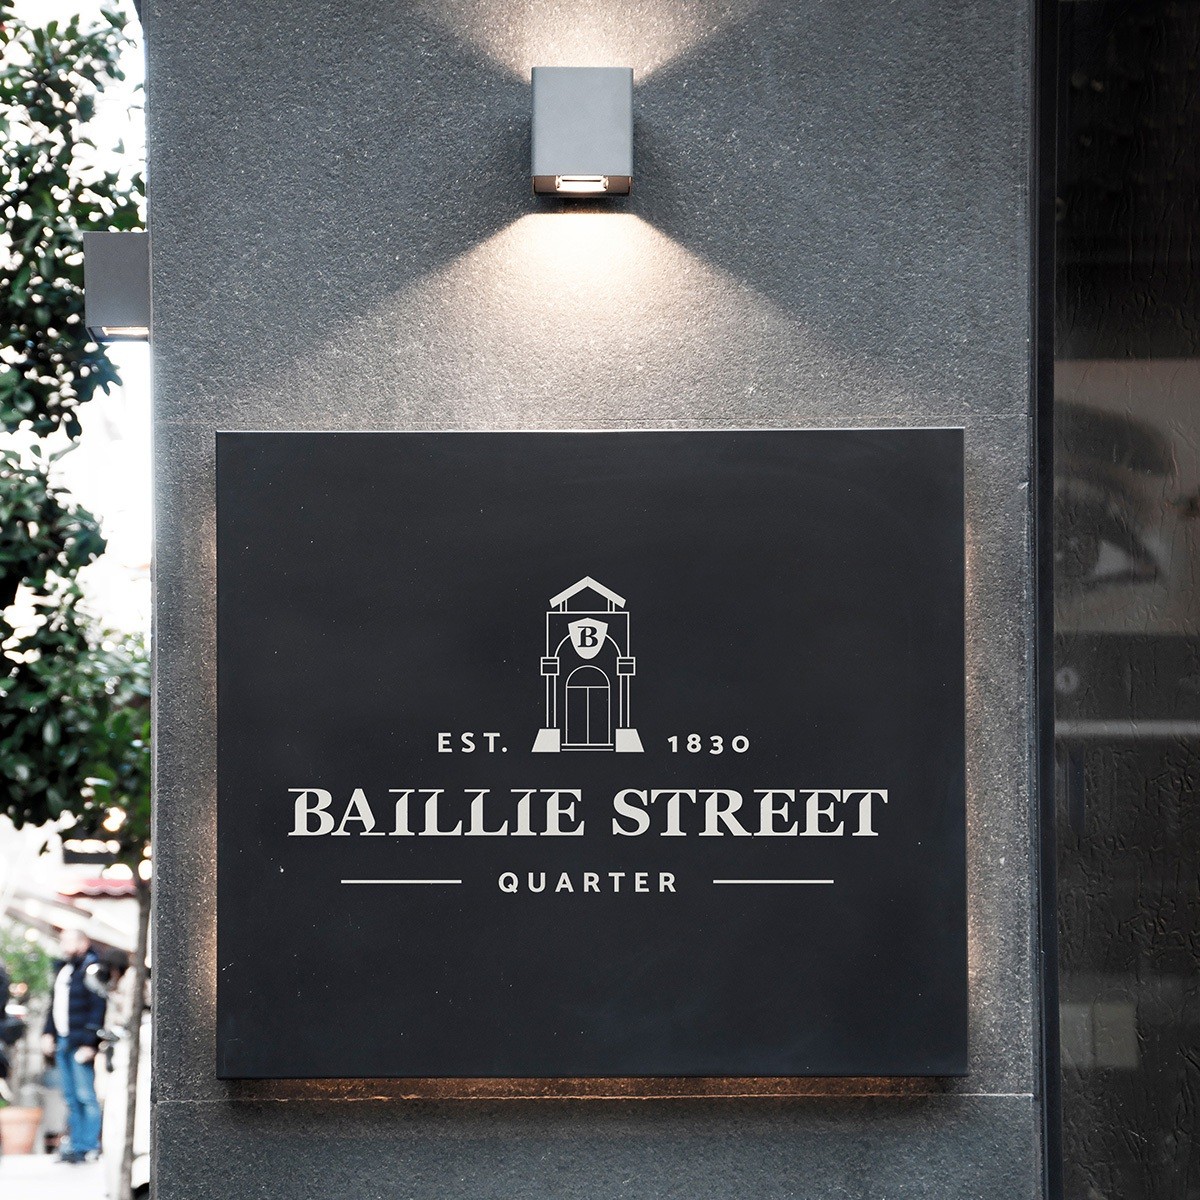 Baillie street quarter in situ